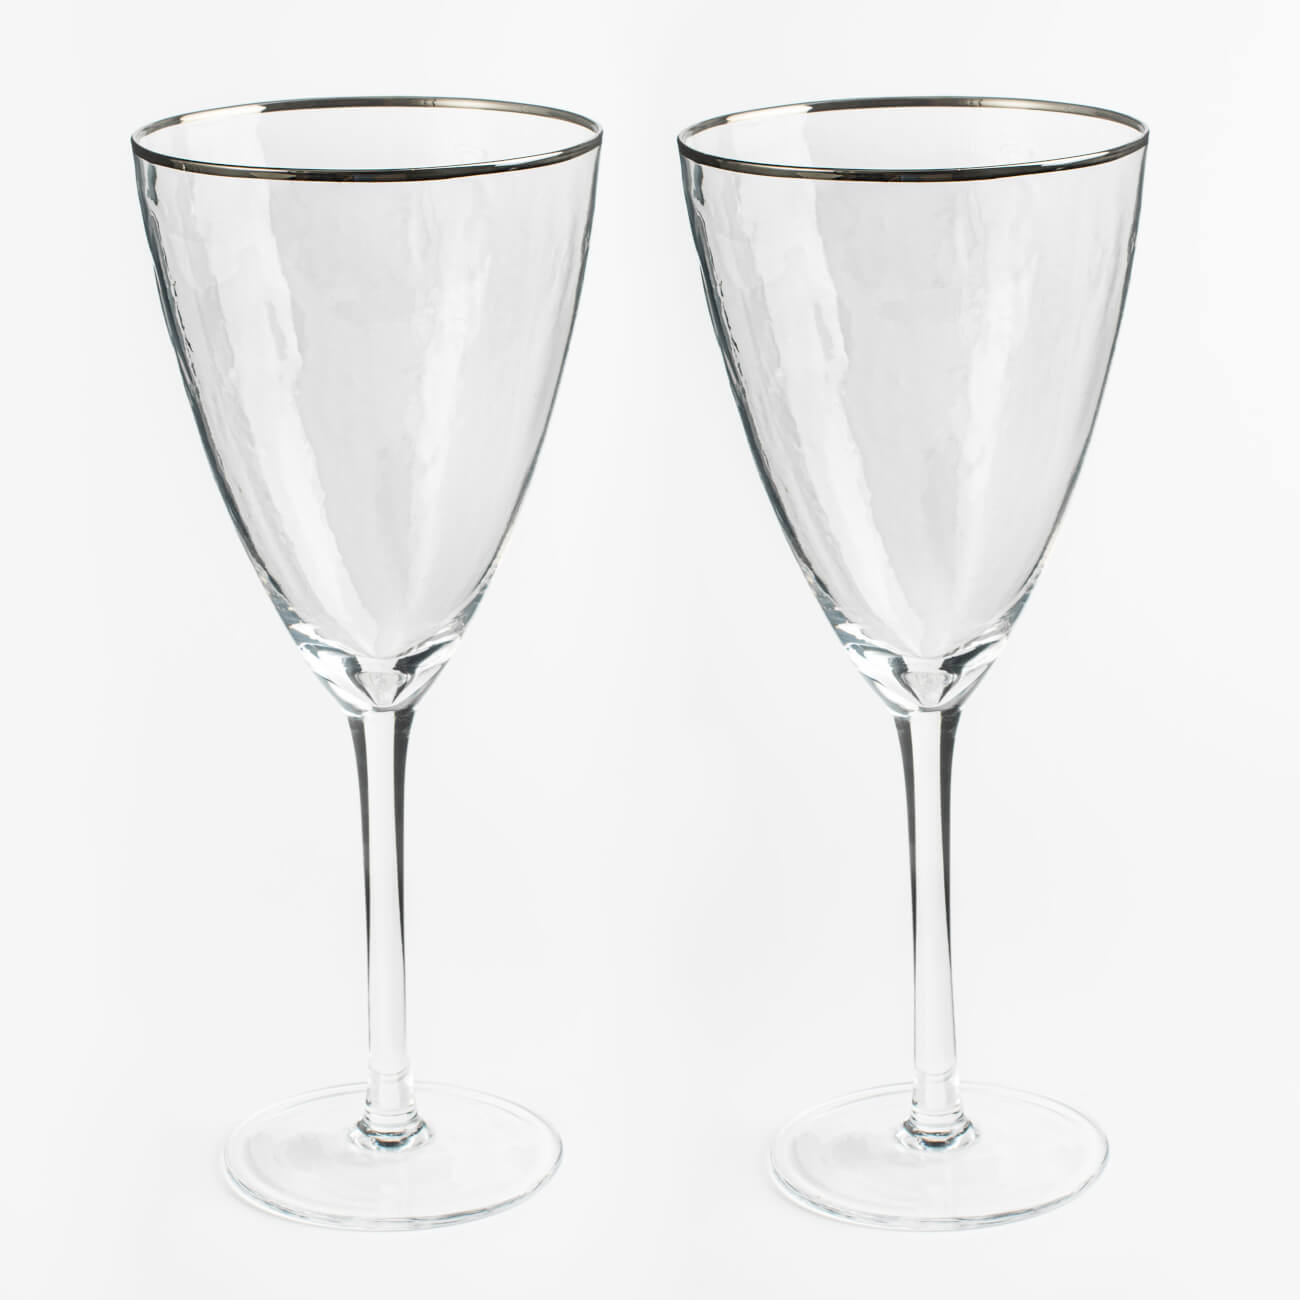 Бокал для вина, 400 мл, 2 шт, стекло, с серебристым кантом, Ripply silver бокал для шампанского 275 мл 2 шт стекло перламутровый ripply polar